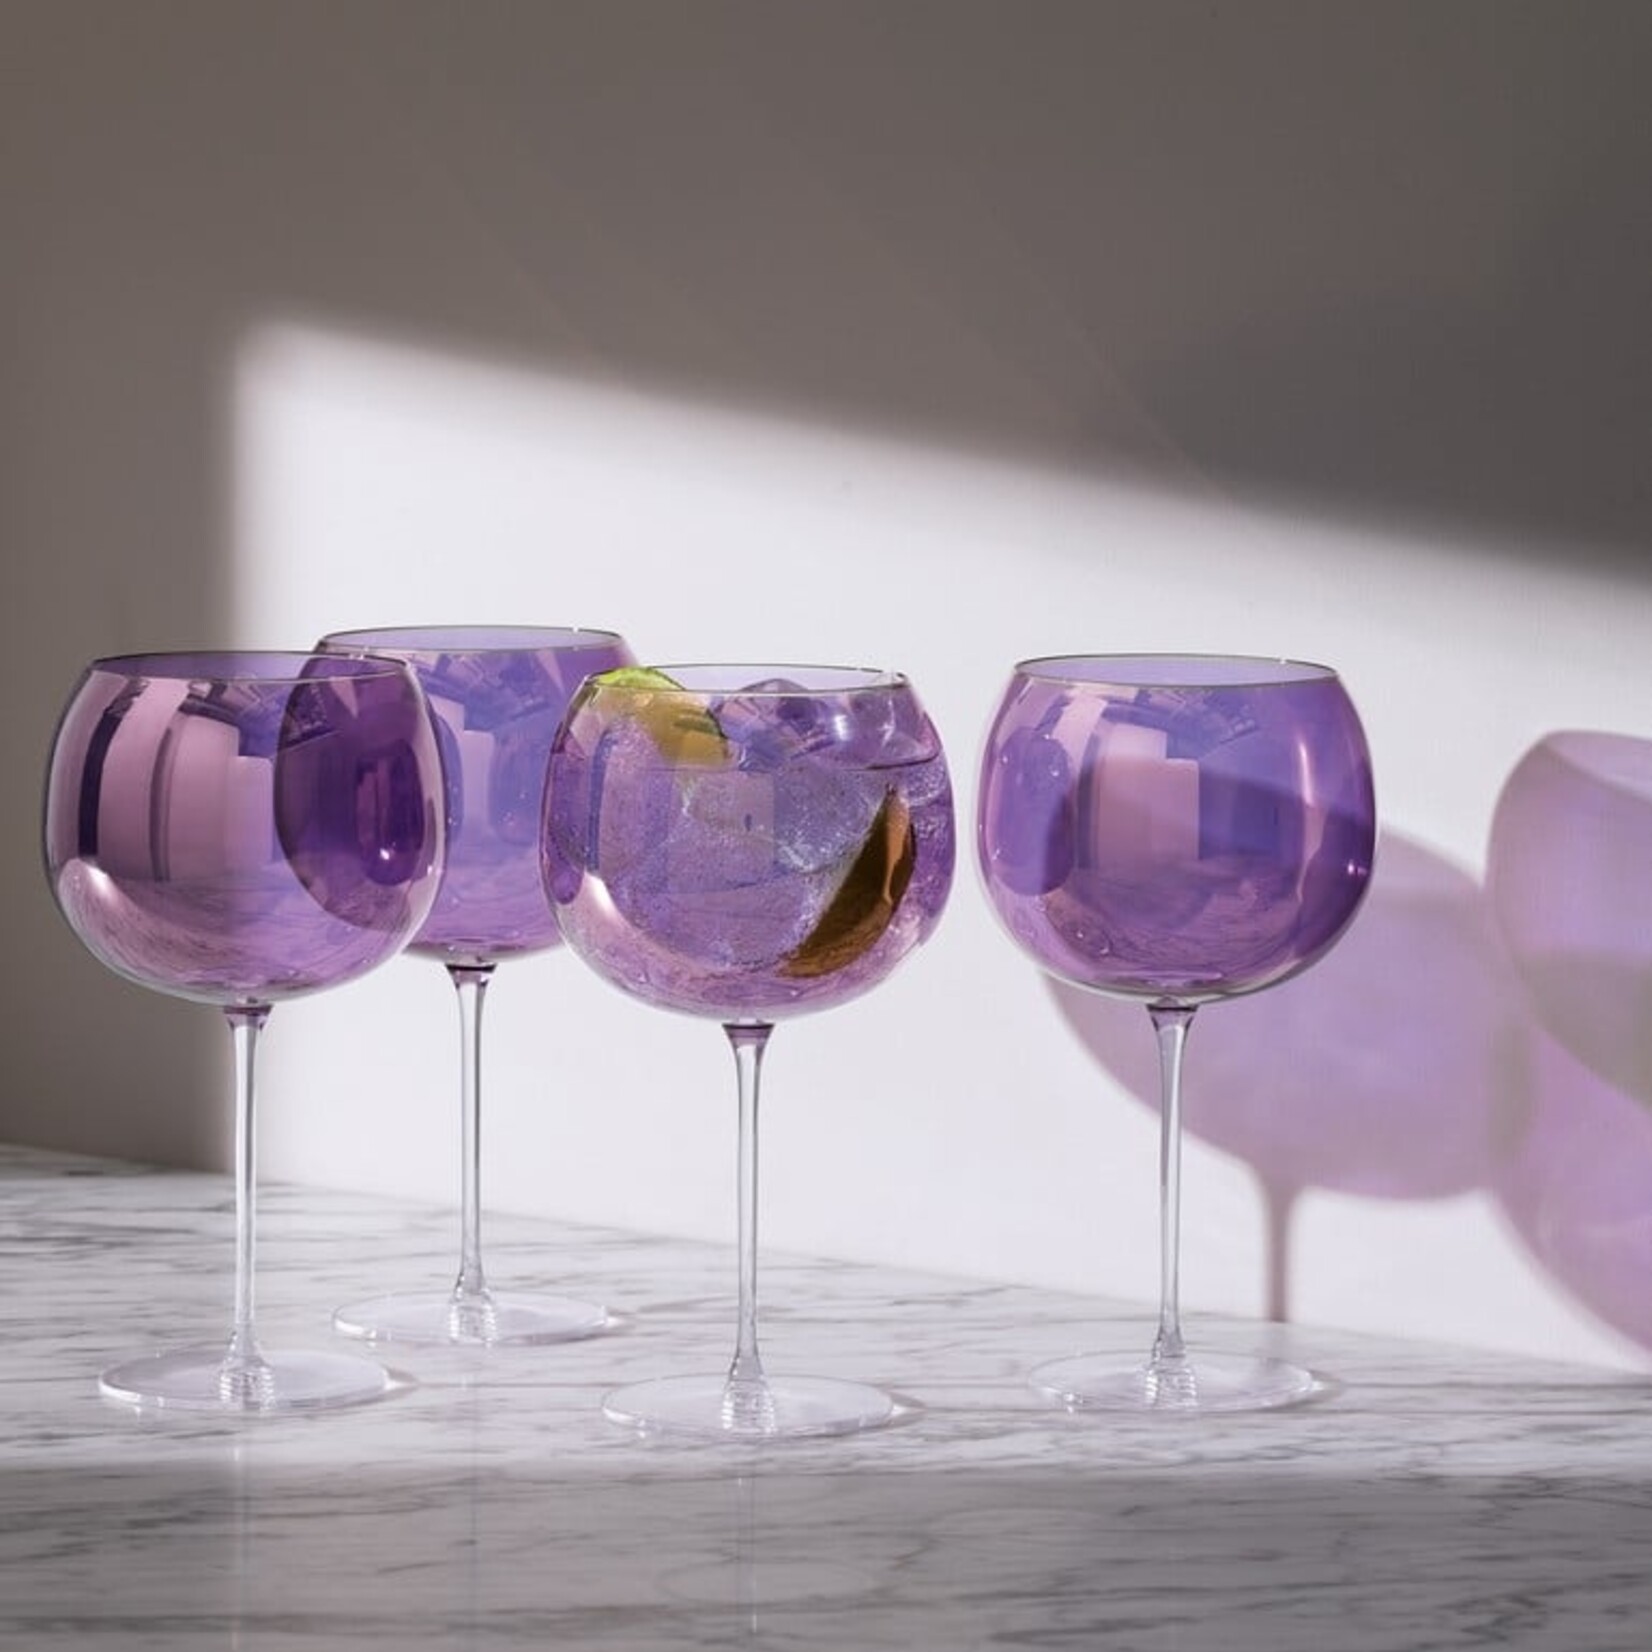 Aurora Balloon Wine Glass